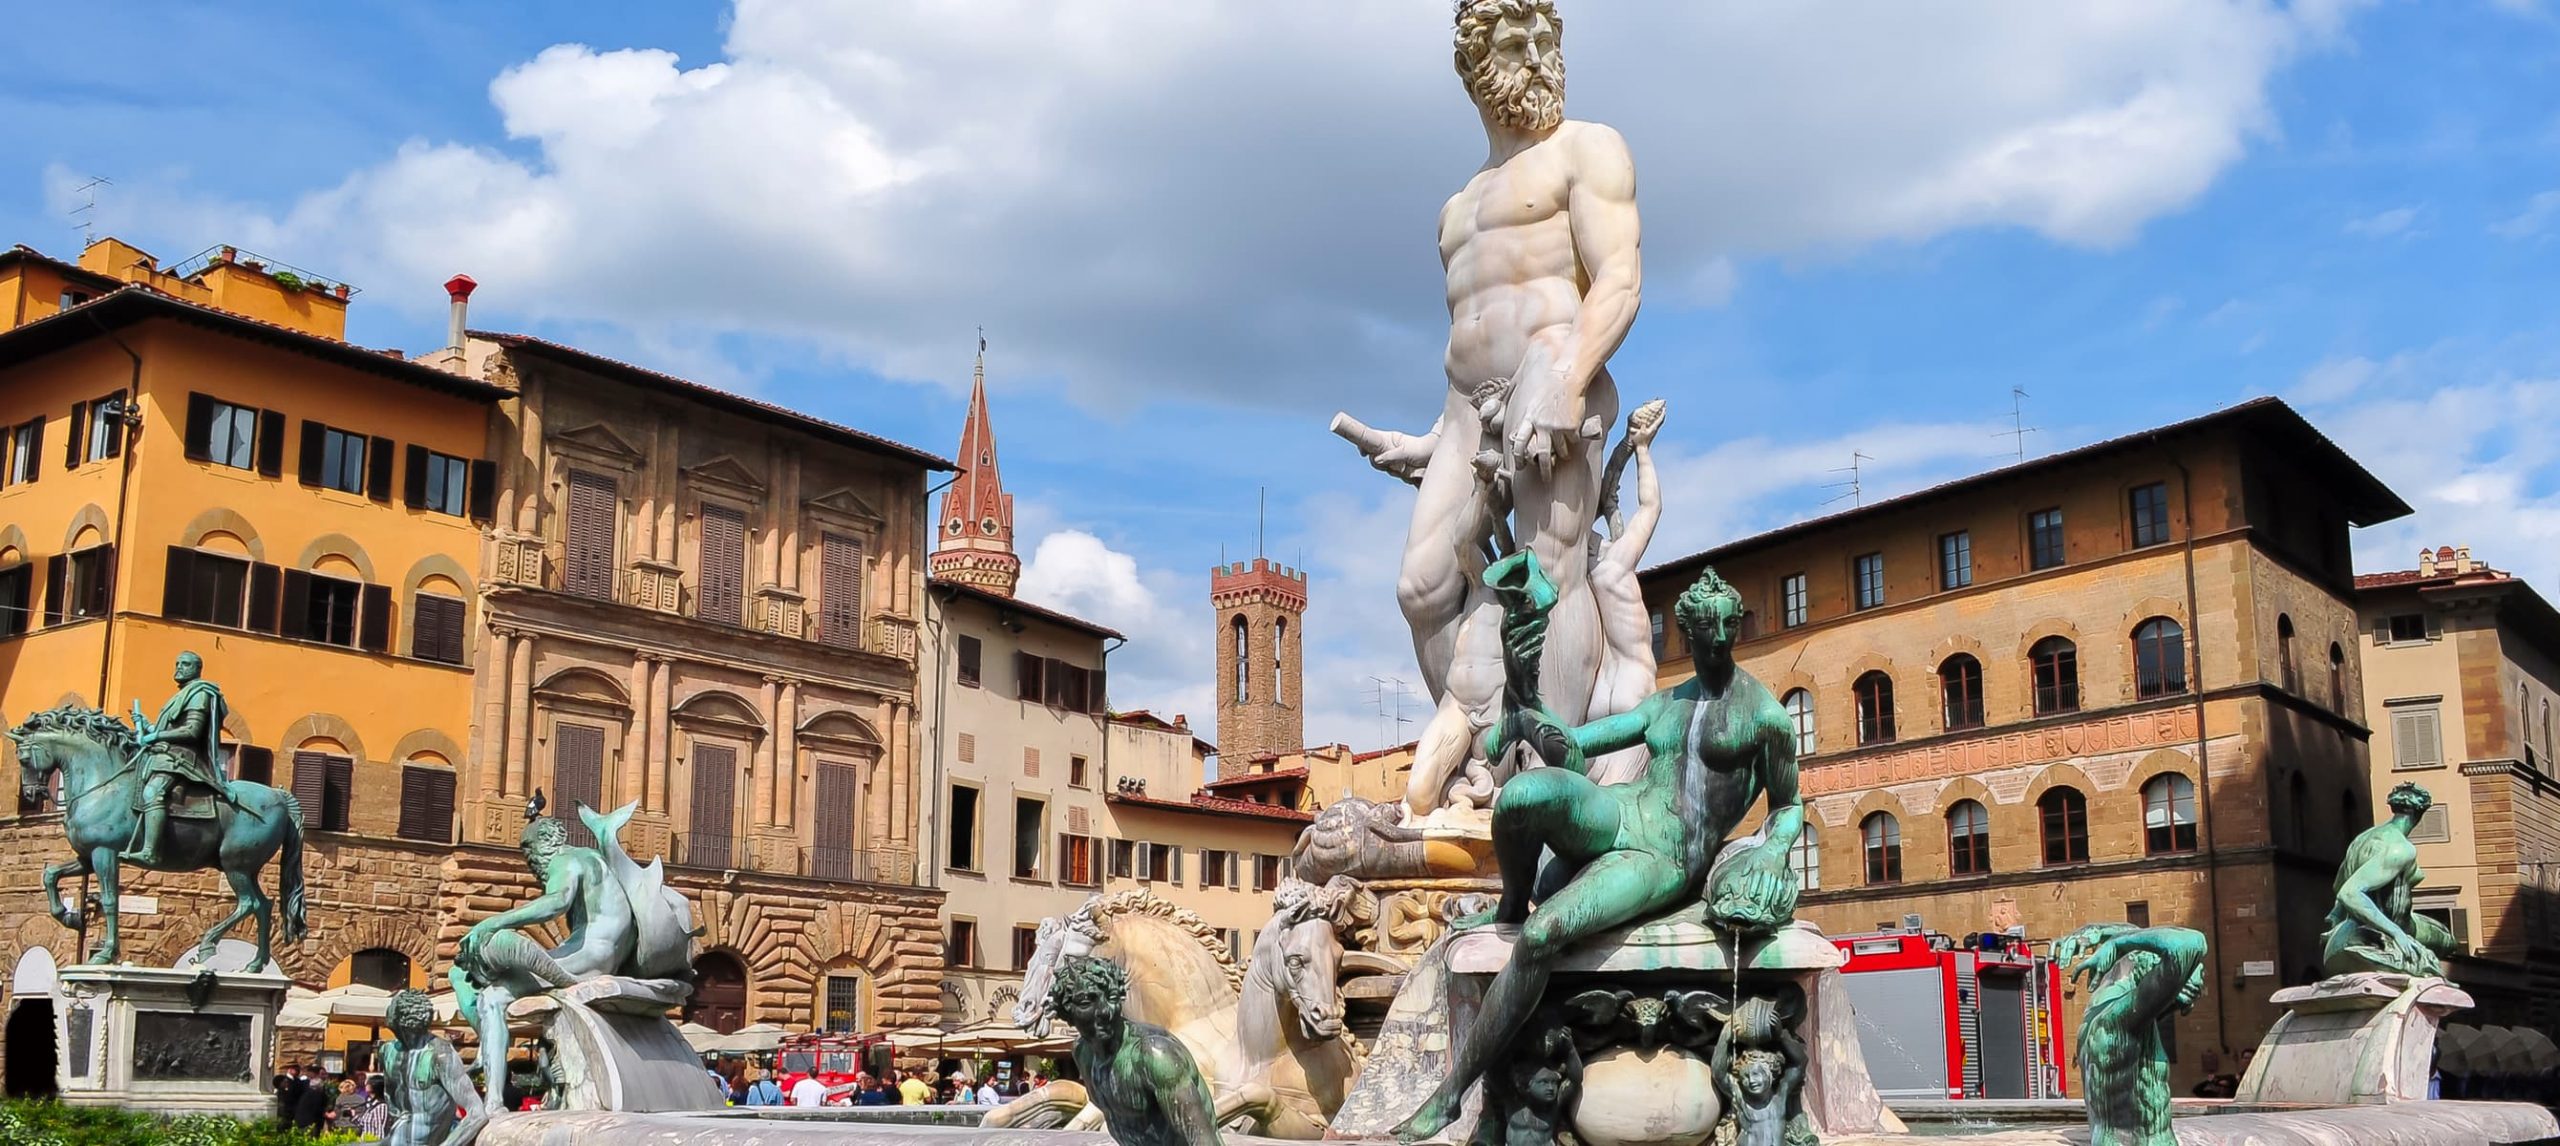 The Neptune Fountain in Piazza della Signoria, Florence.